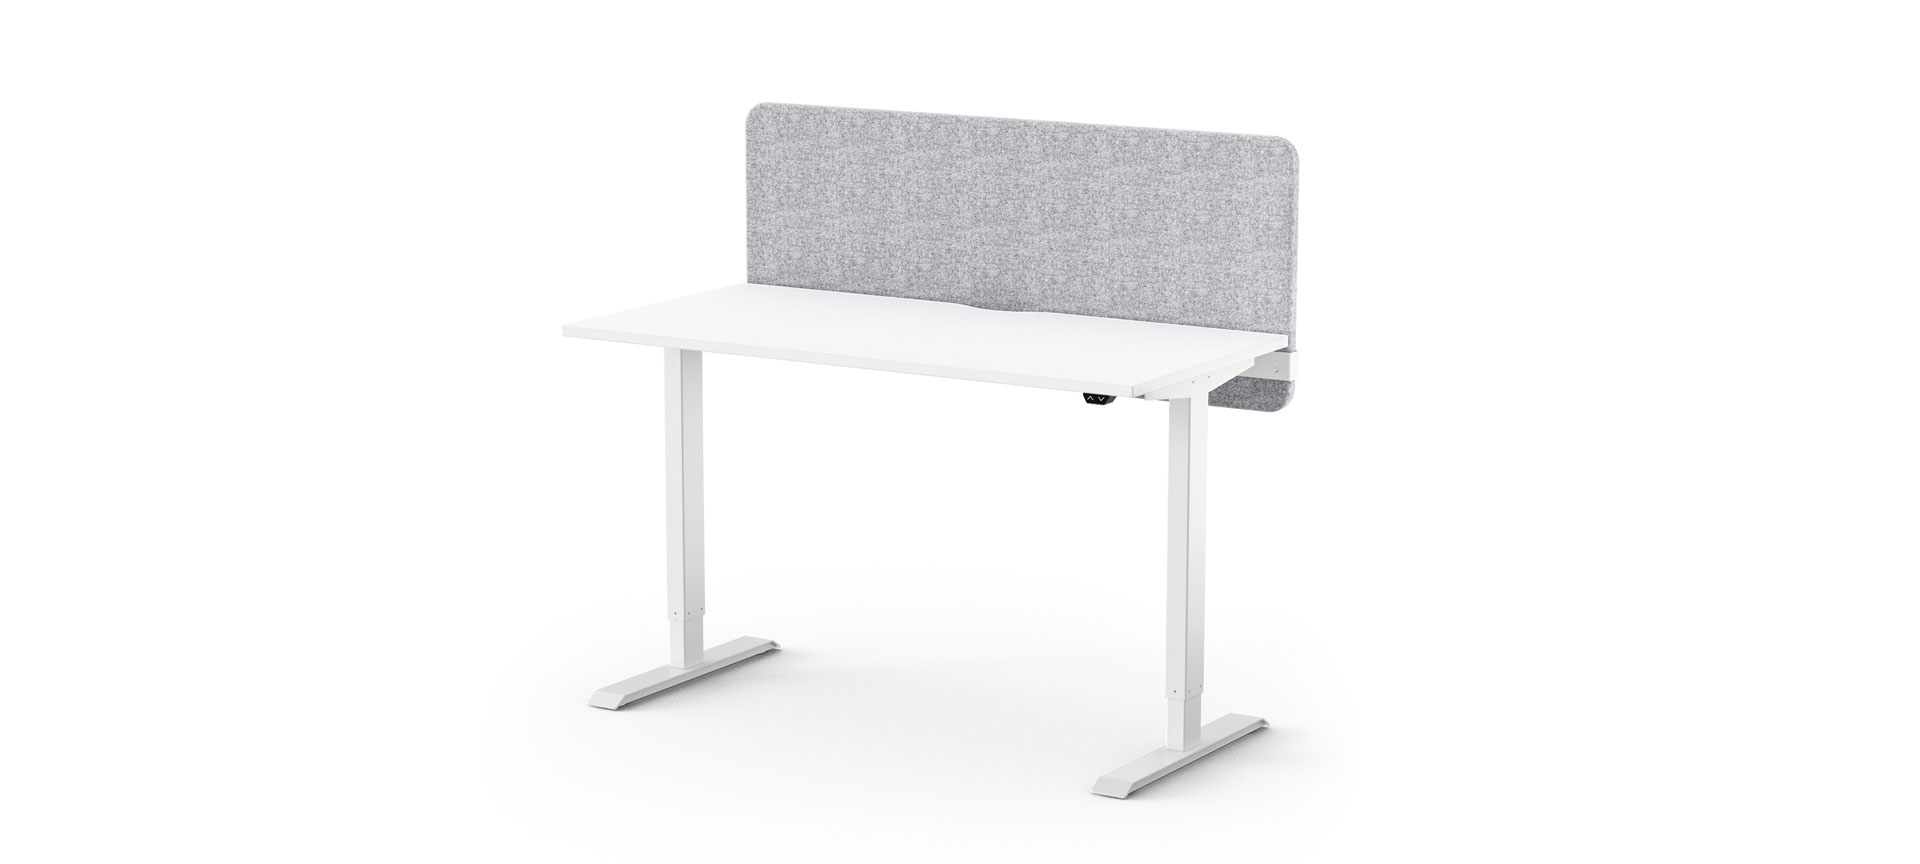 Formetiq Alto 1 sit/stand desk and bench